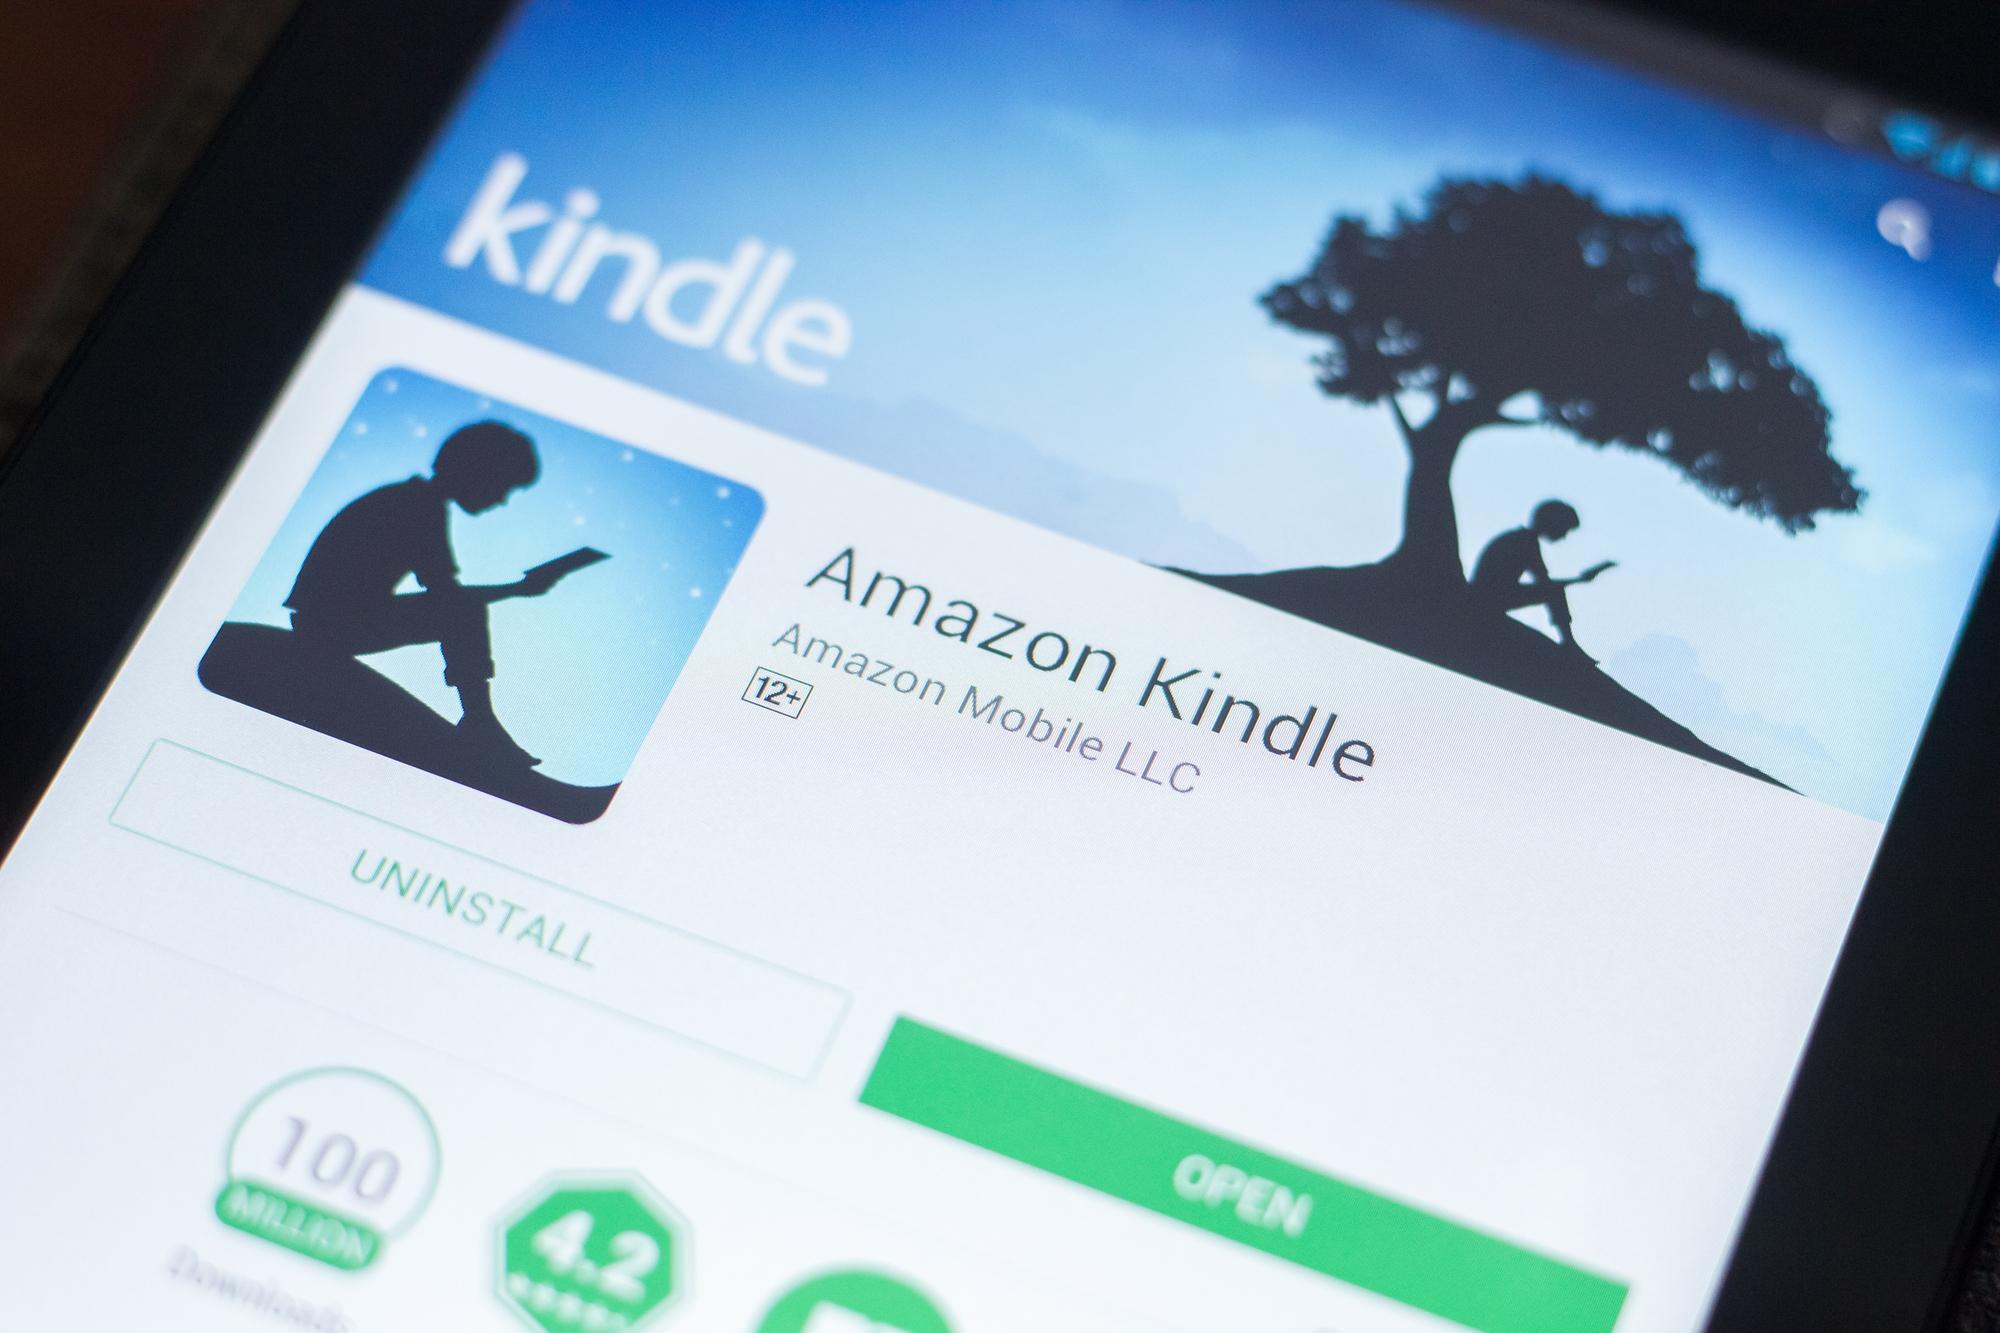 Amazon Kindle angreifbar durch bösartige E-Books: Check Point nutzte Sicherheitslücken